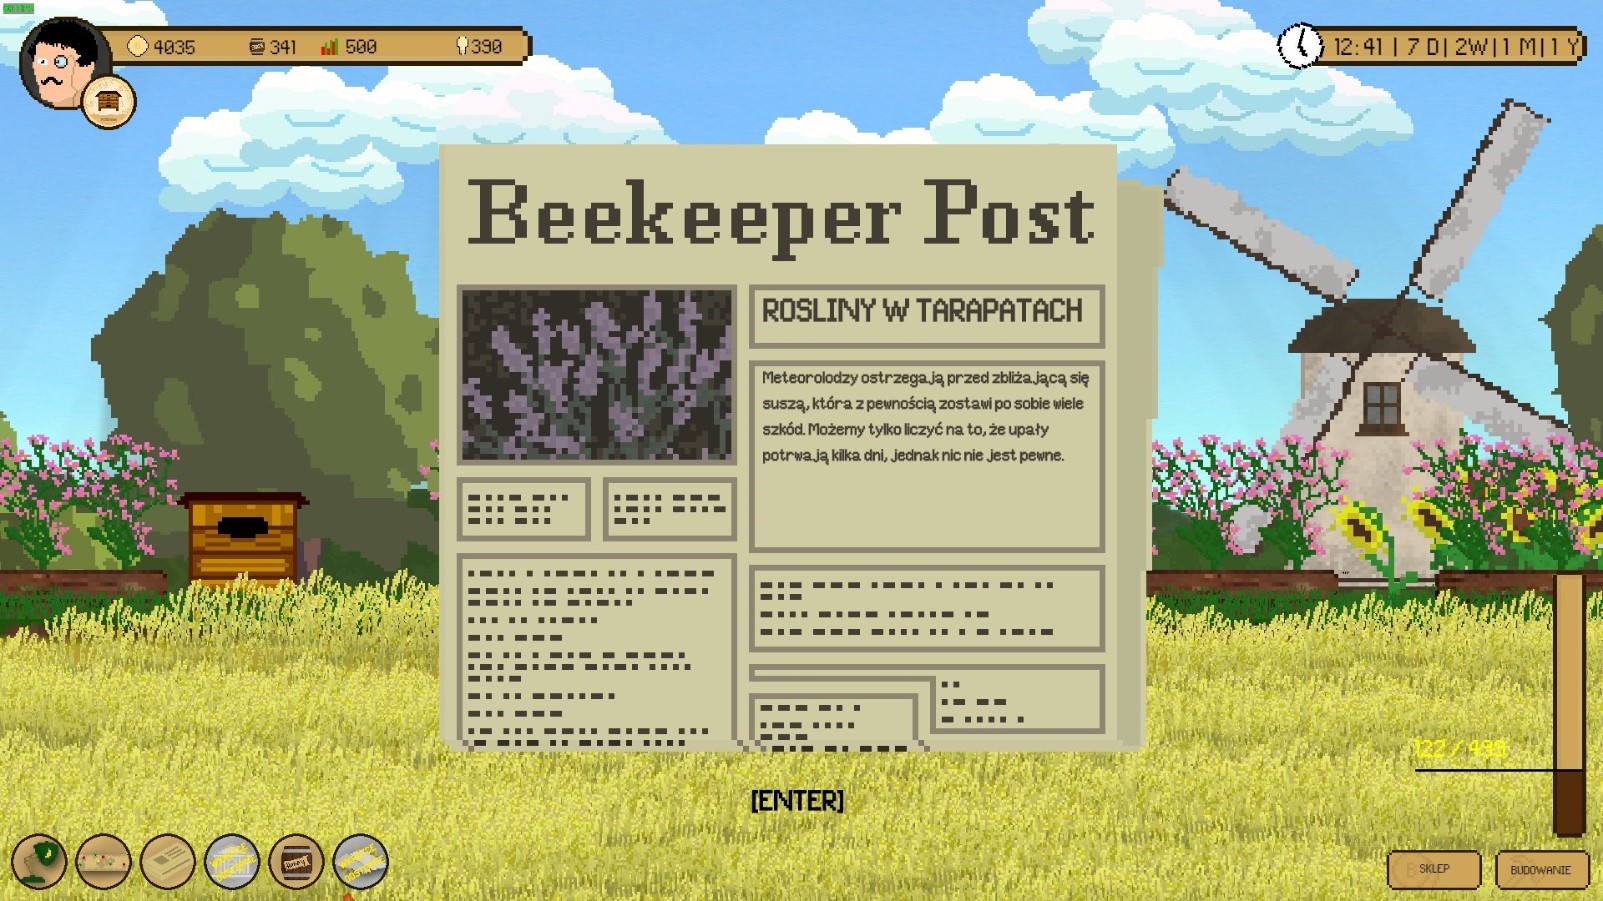 beekeeper-pierwsze-wrazenia-2